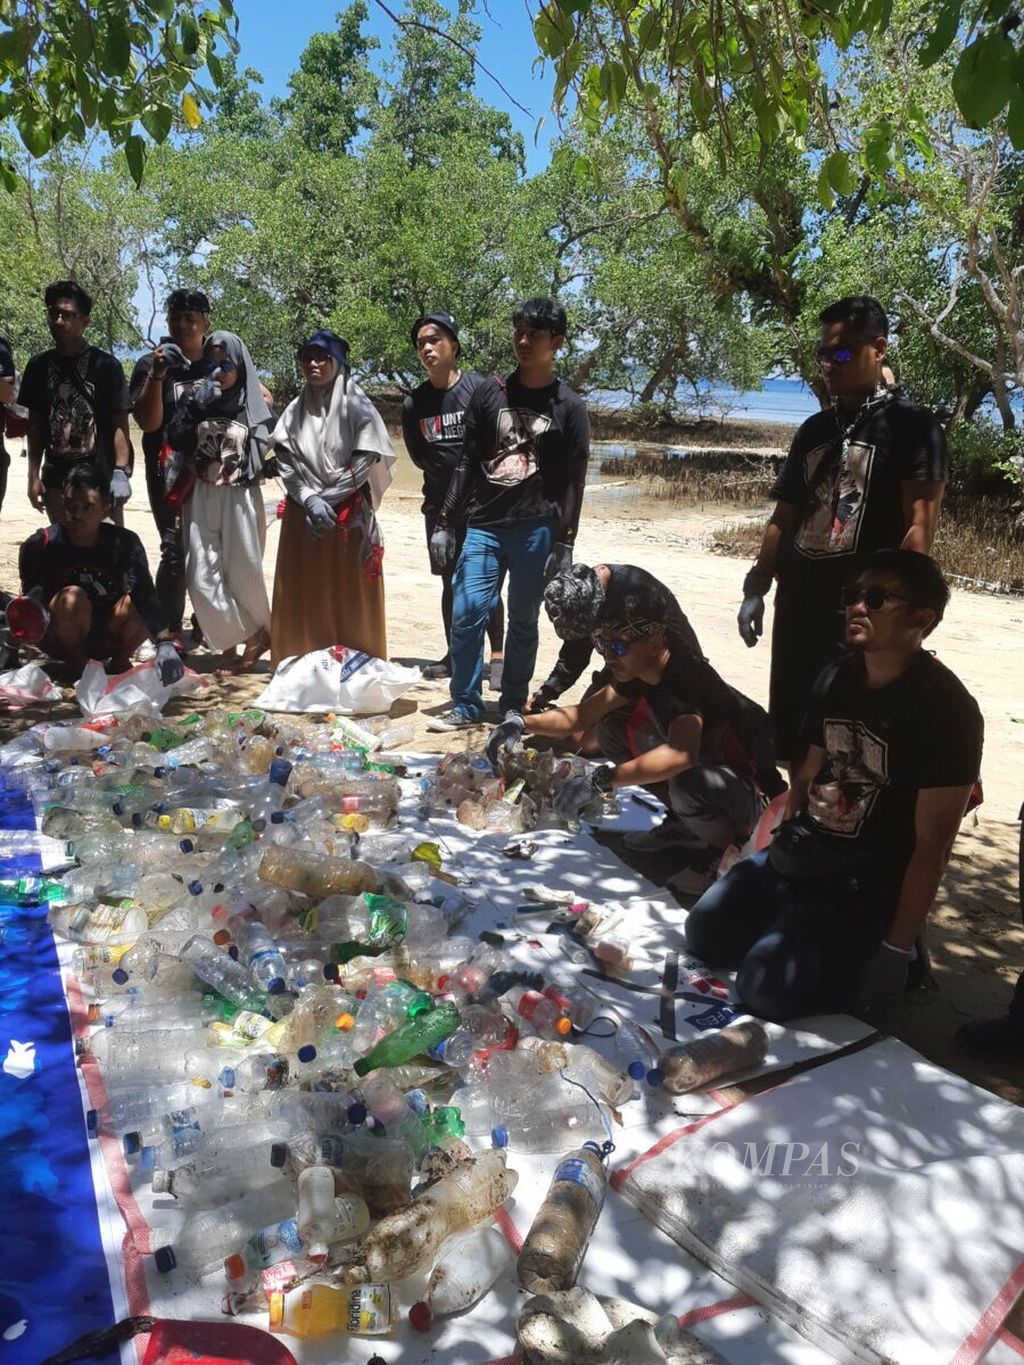 Sampah plastik jadi isu yang serius karena mulai merusak ekosistem laut. Memerangi sampah plastik jadi salah satu fokus kampanye anak muda peduli lingkungan. Tampak aksi bersih pantai di Pantai Bunaken, Manado, Sulawesi Utara, lewat program KFC untuk Negeri.